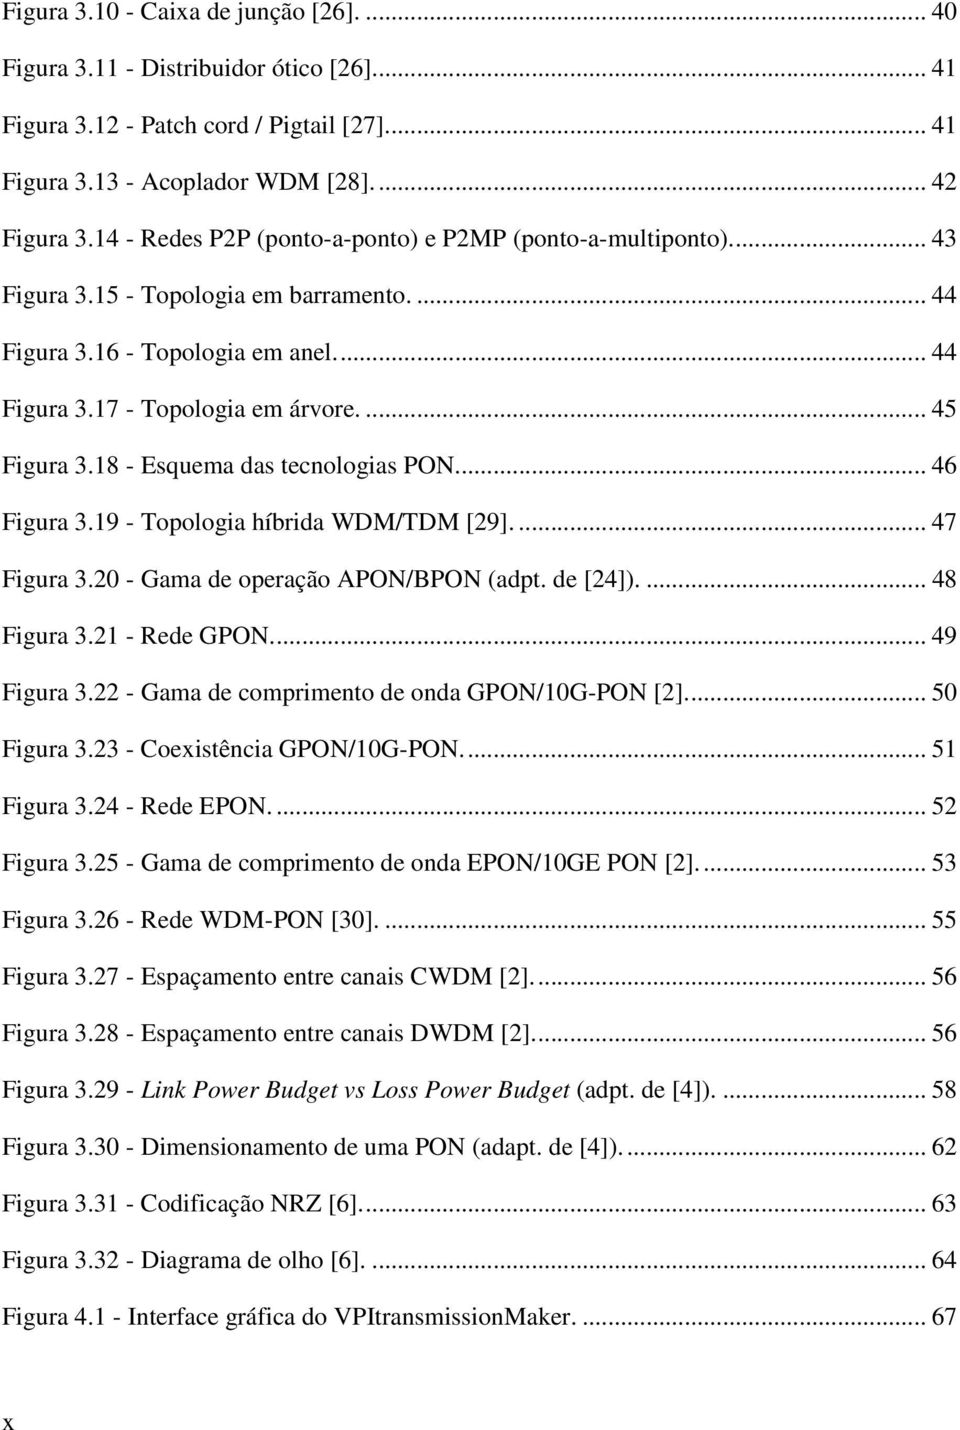 18 - Esquema das tecnologias PON... 46 Figura 3.19 - Topologia híbrida WDM/TDM [29].... 47 Figura 3.20 - Gama de operação APON/BPON (adpt. de [24]).... 48 Figura 3.21 - Rede GPON.... 49 Figura 3.